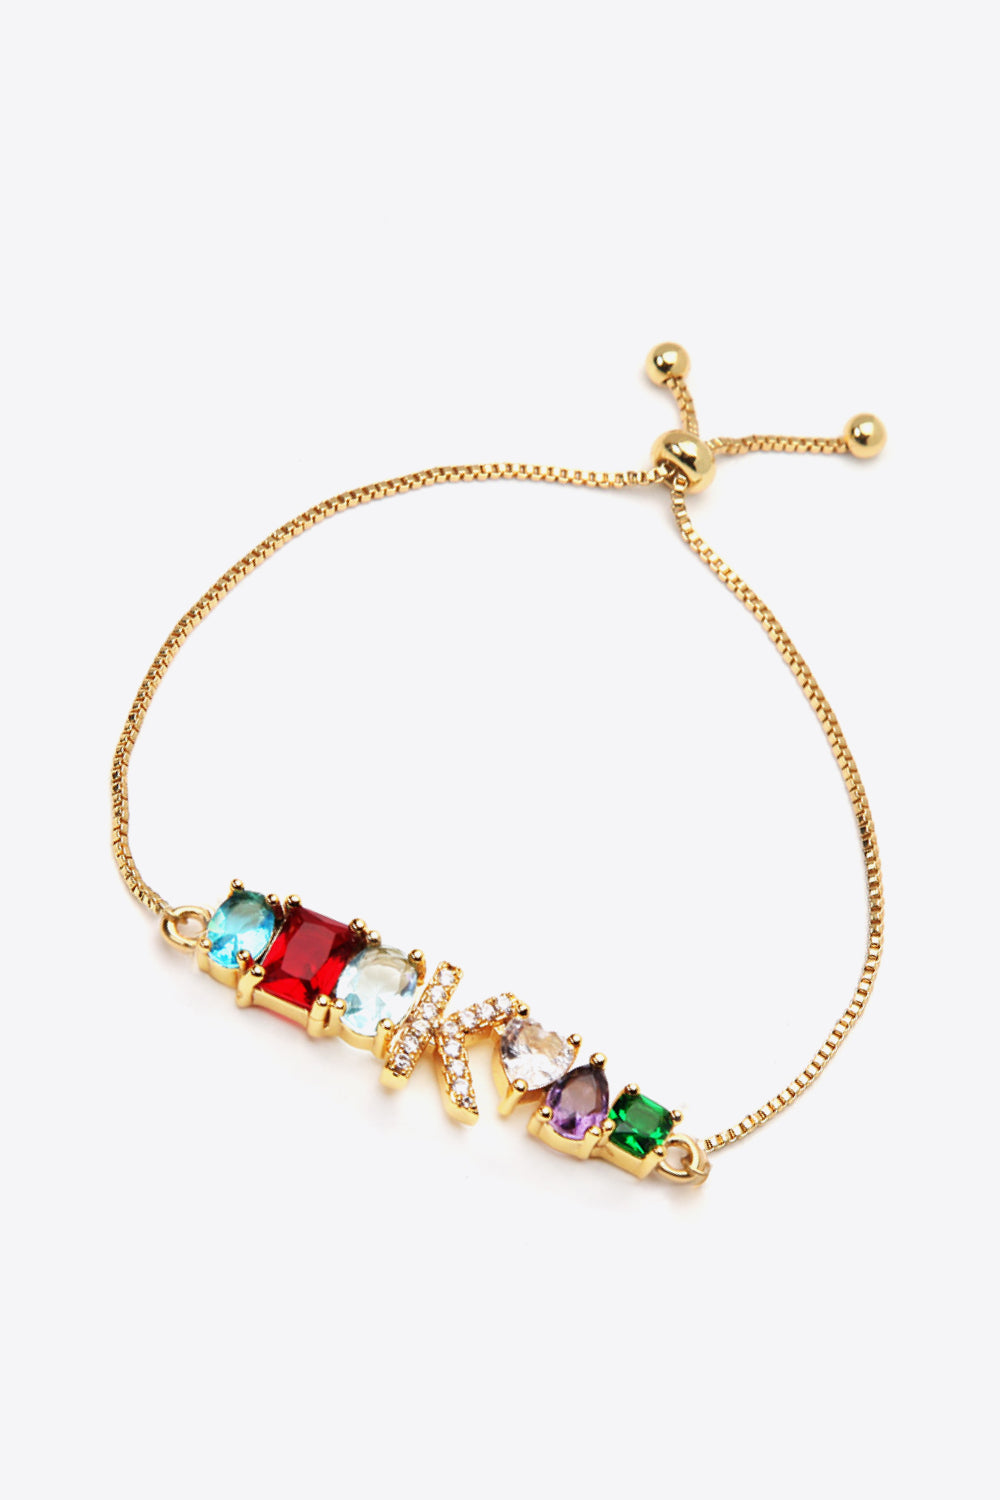 K to T Zircon Bracelet - Women’s Jewelry - Bracelets - 2 - 2024